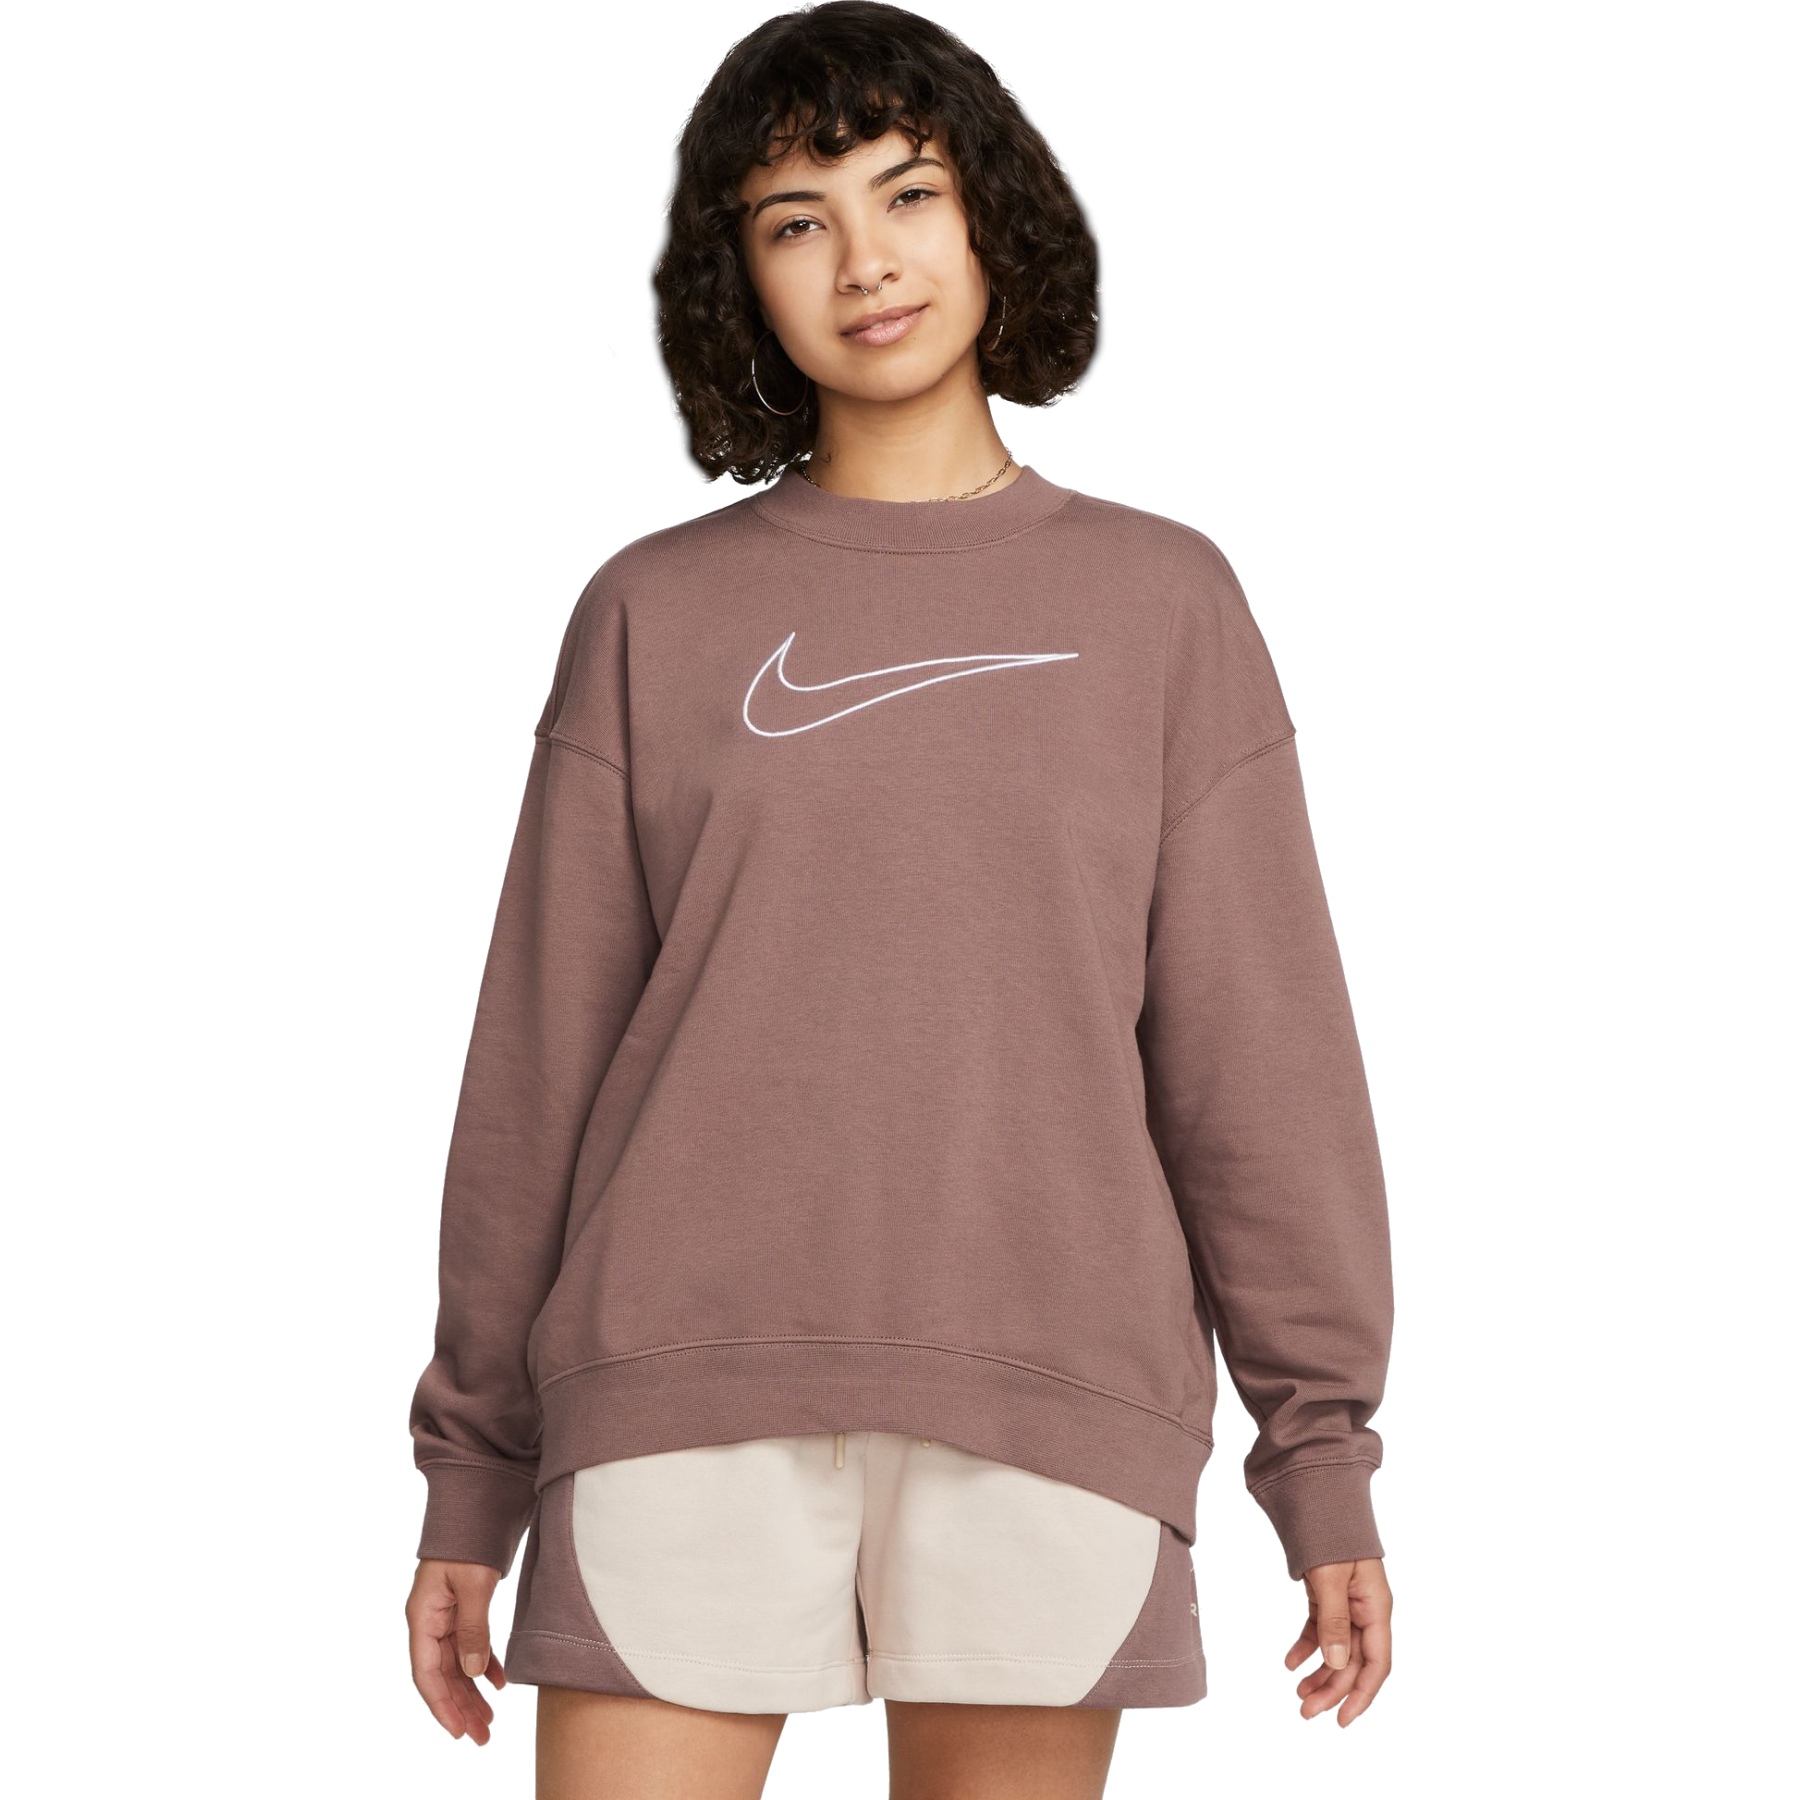 Photo produit de Nike Sweatshirt Femme - Dri-FIT Get Fit Graphic Essential - plum eclipse/white DQ5542-291